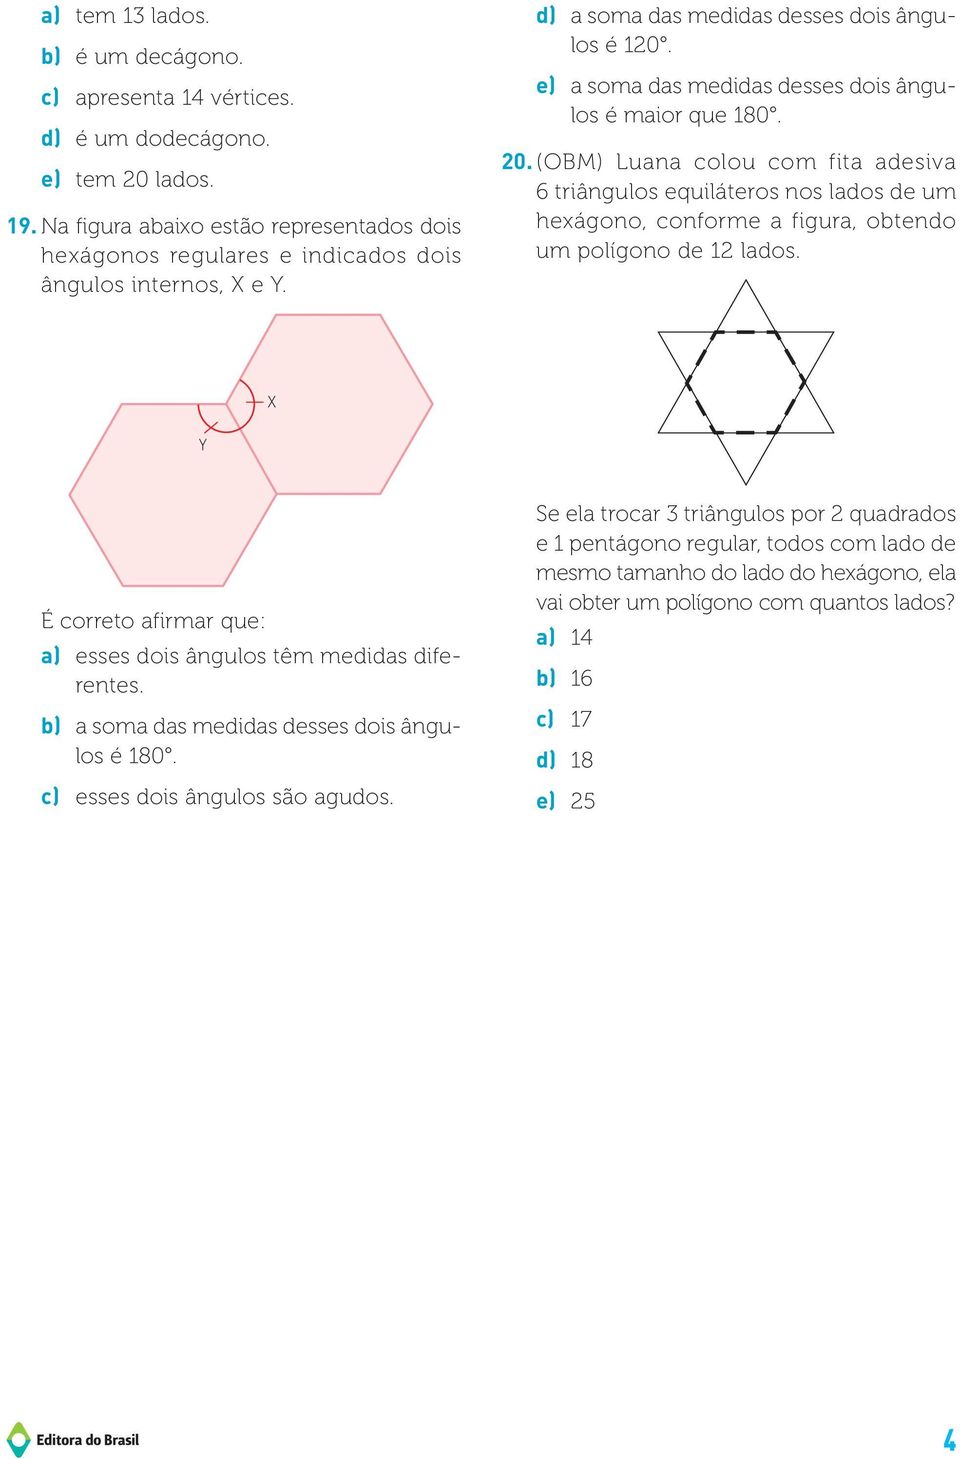 e) a soma das medidas desses dois ângulos é maior que 180. 20. (OM) Luana colou com fita adesiva 6 triângulos equiláteros nos lados de um hexágono, conforme a figura, obtendo um polígono de 12 lados.